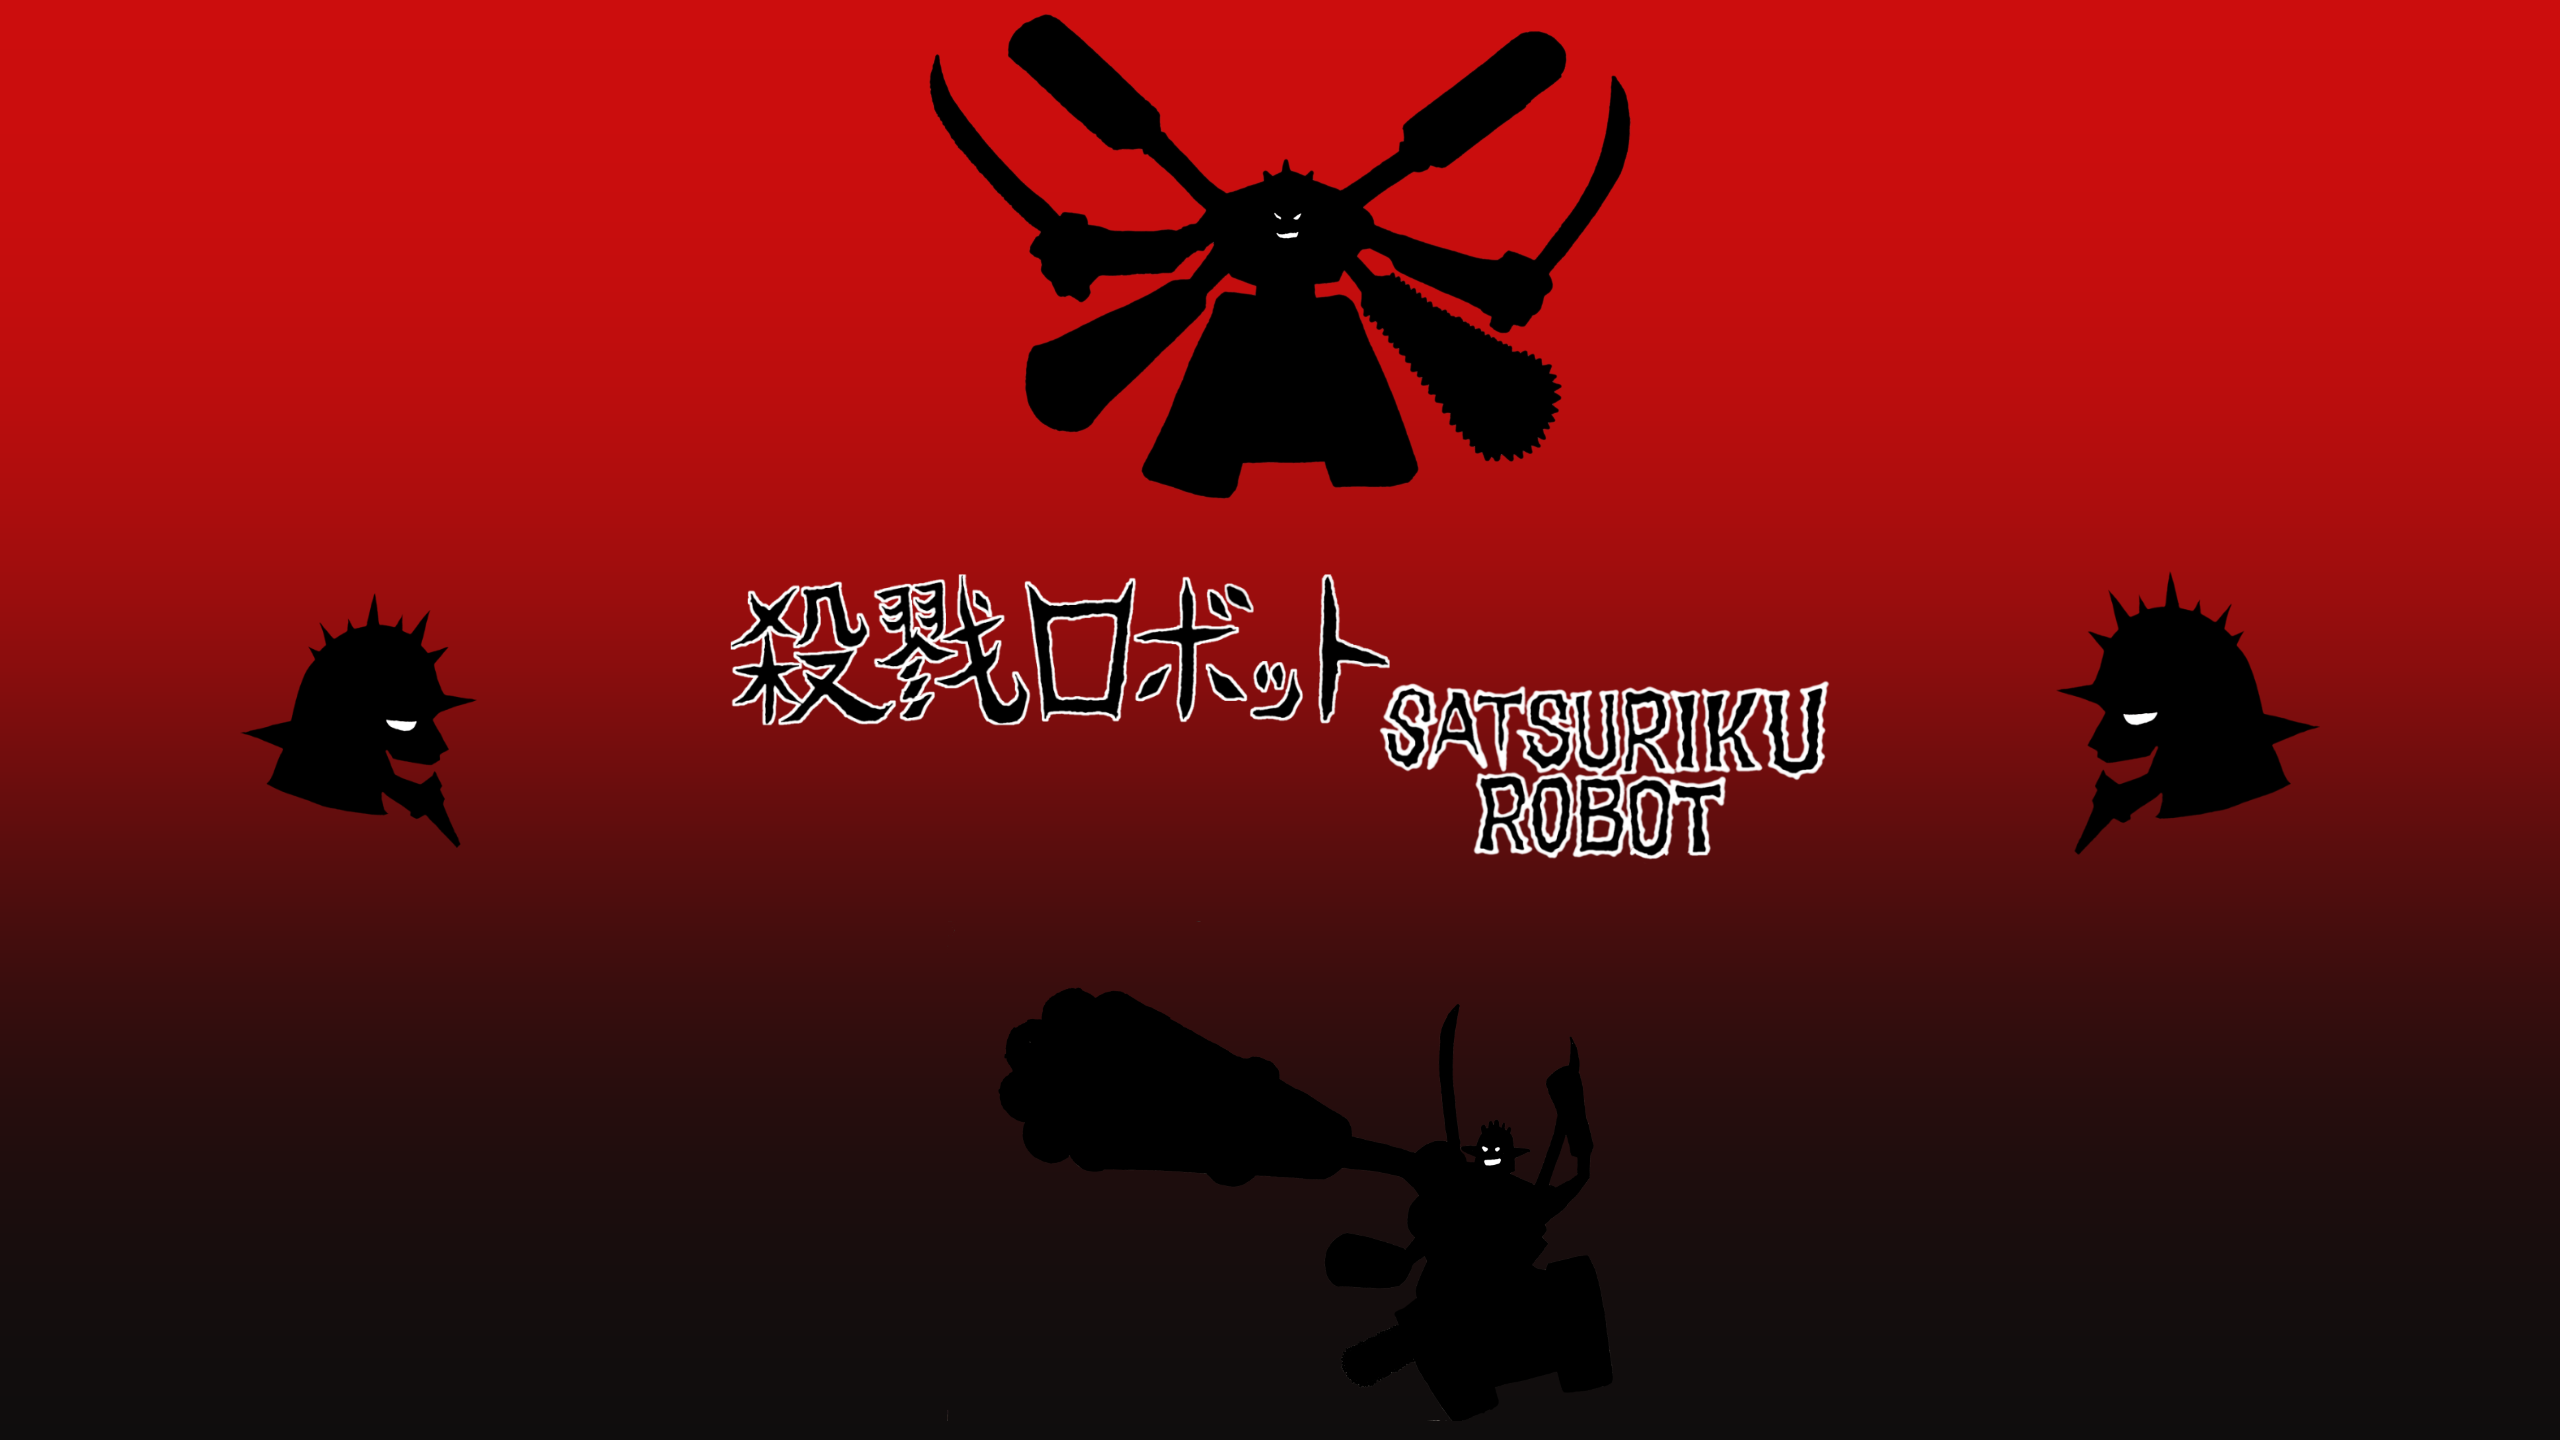 殺戮ロボット公式サイト / SATSURIKU ROBOT official site